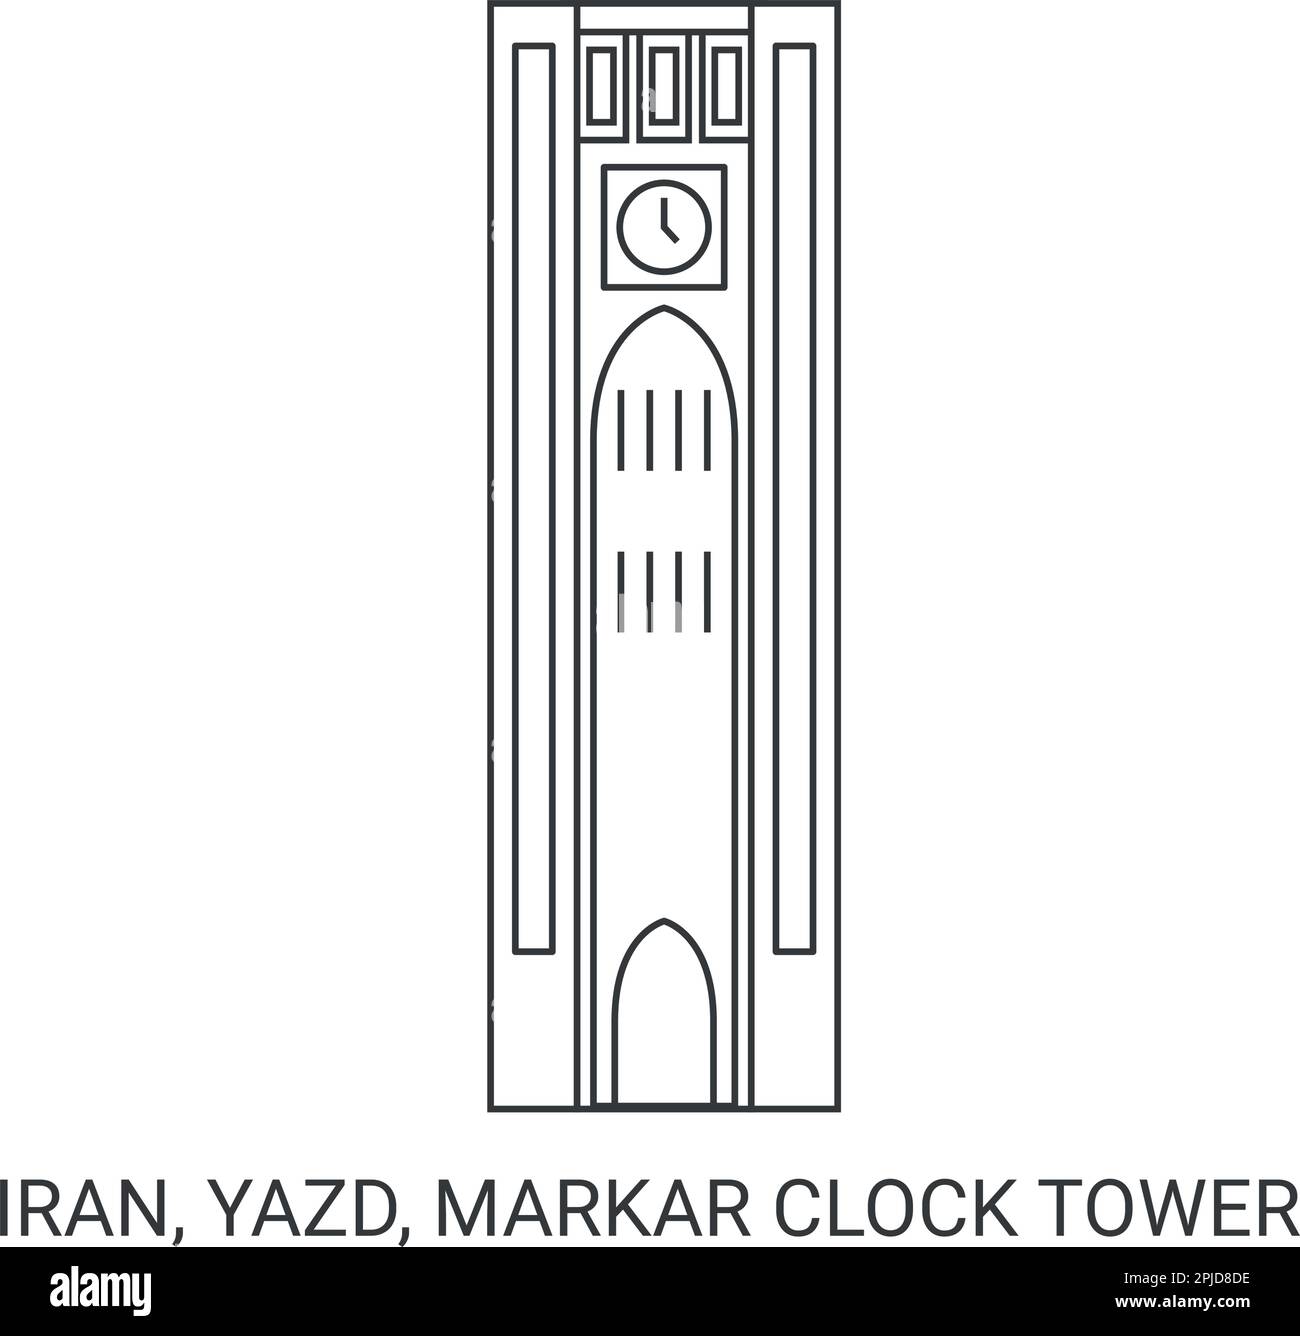 Iran, Yazd, Markar Clock Tower travel landmark vector illustration Stock Vector